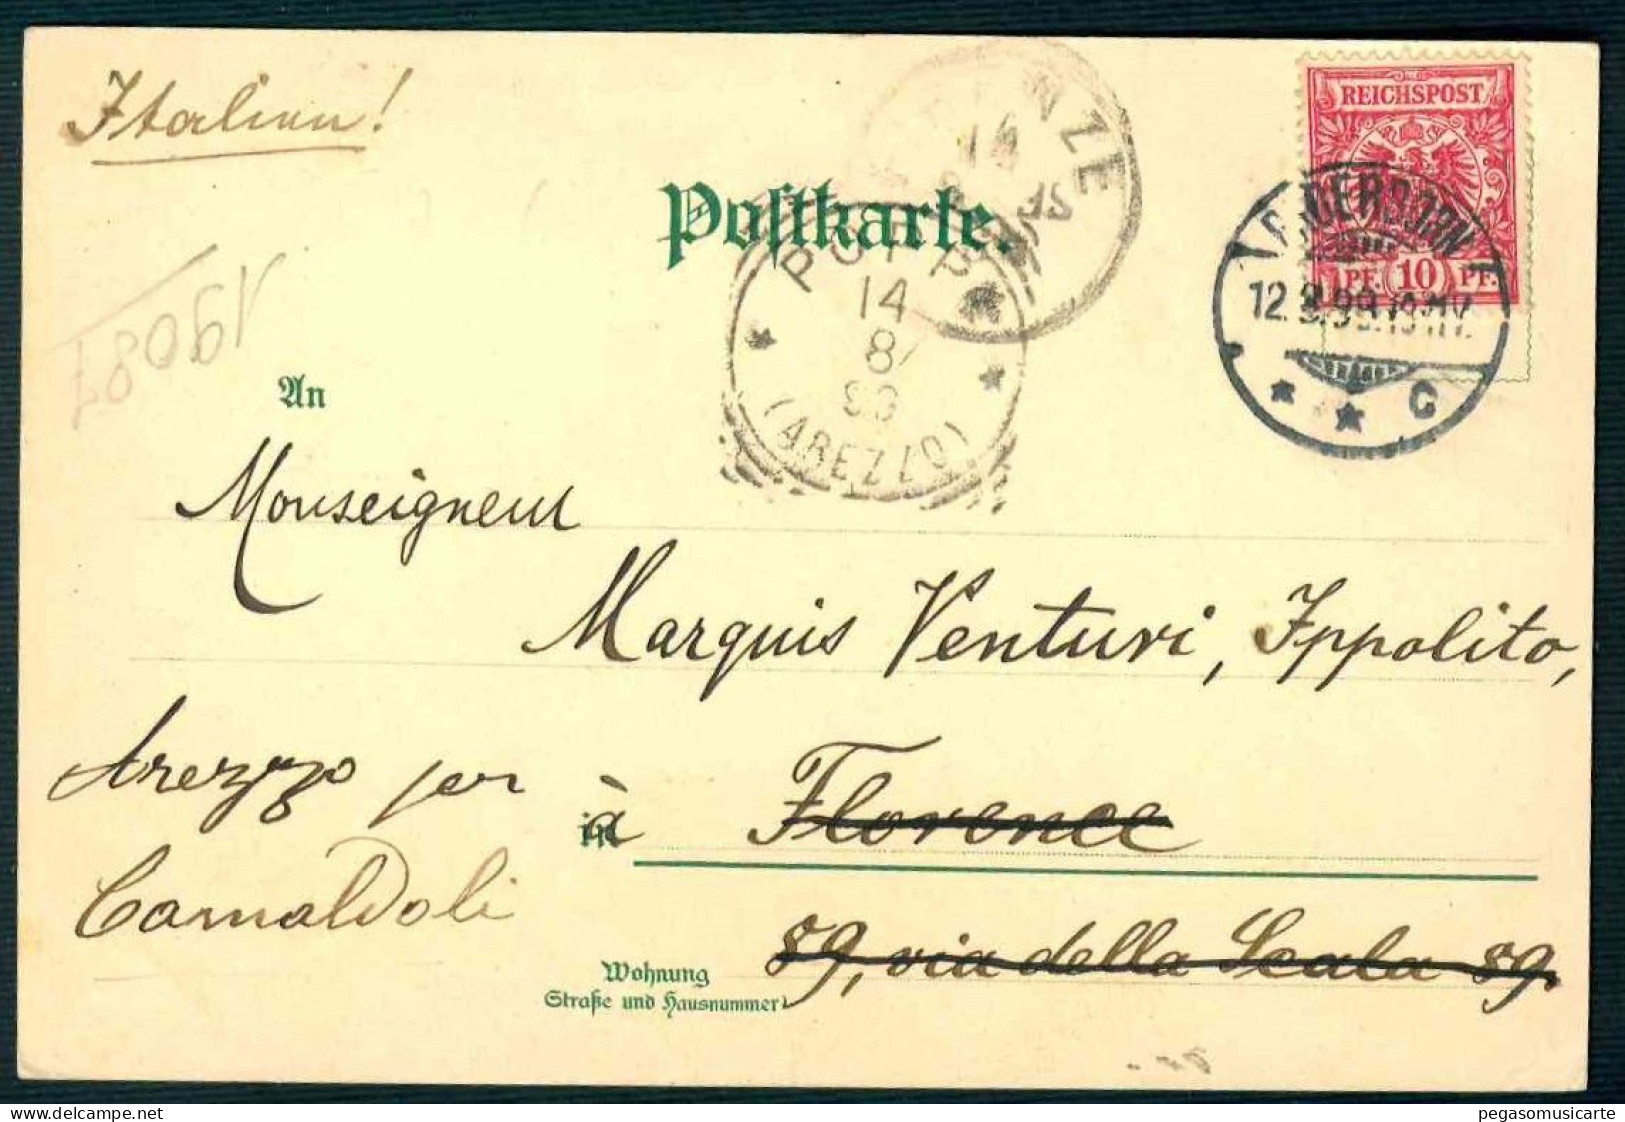 BK054 PORTRAIT GALERIE - WILHELM DER GROSSE REICHSPOST GERMANY OSTERREICH HUNGARY 1898 - Personnages